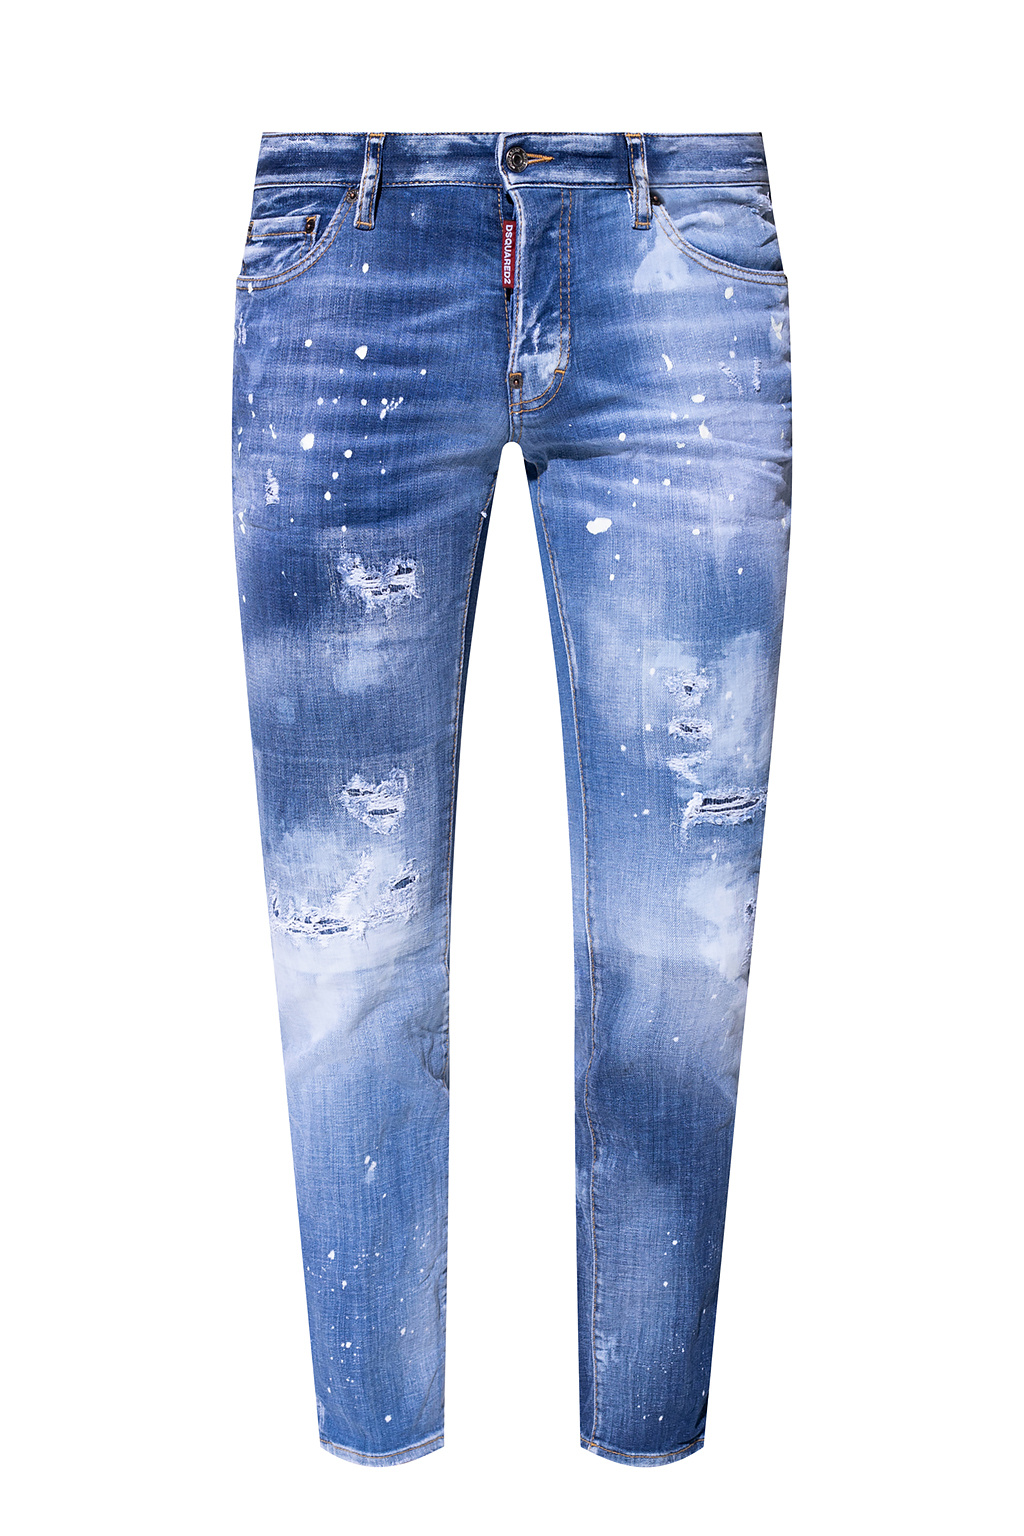 Dsquared2 ‘Slim Jean’ jeans